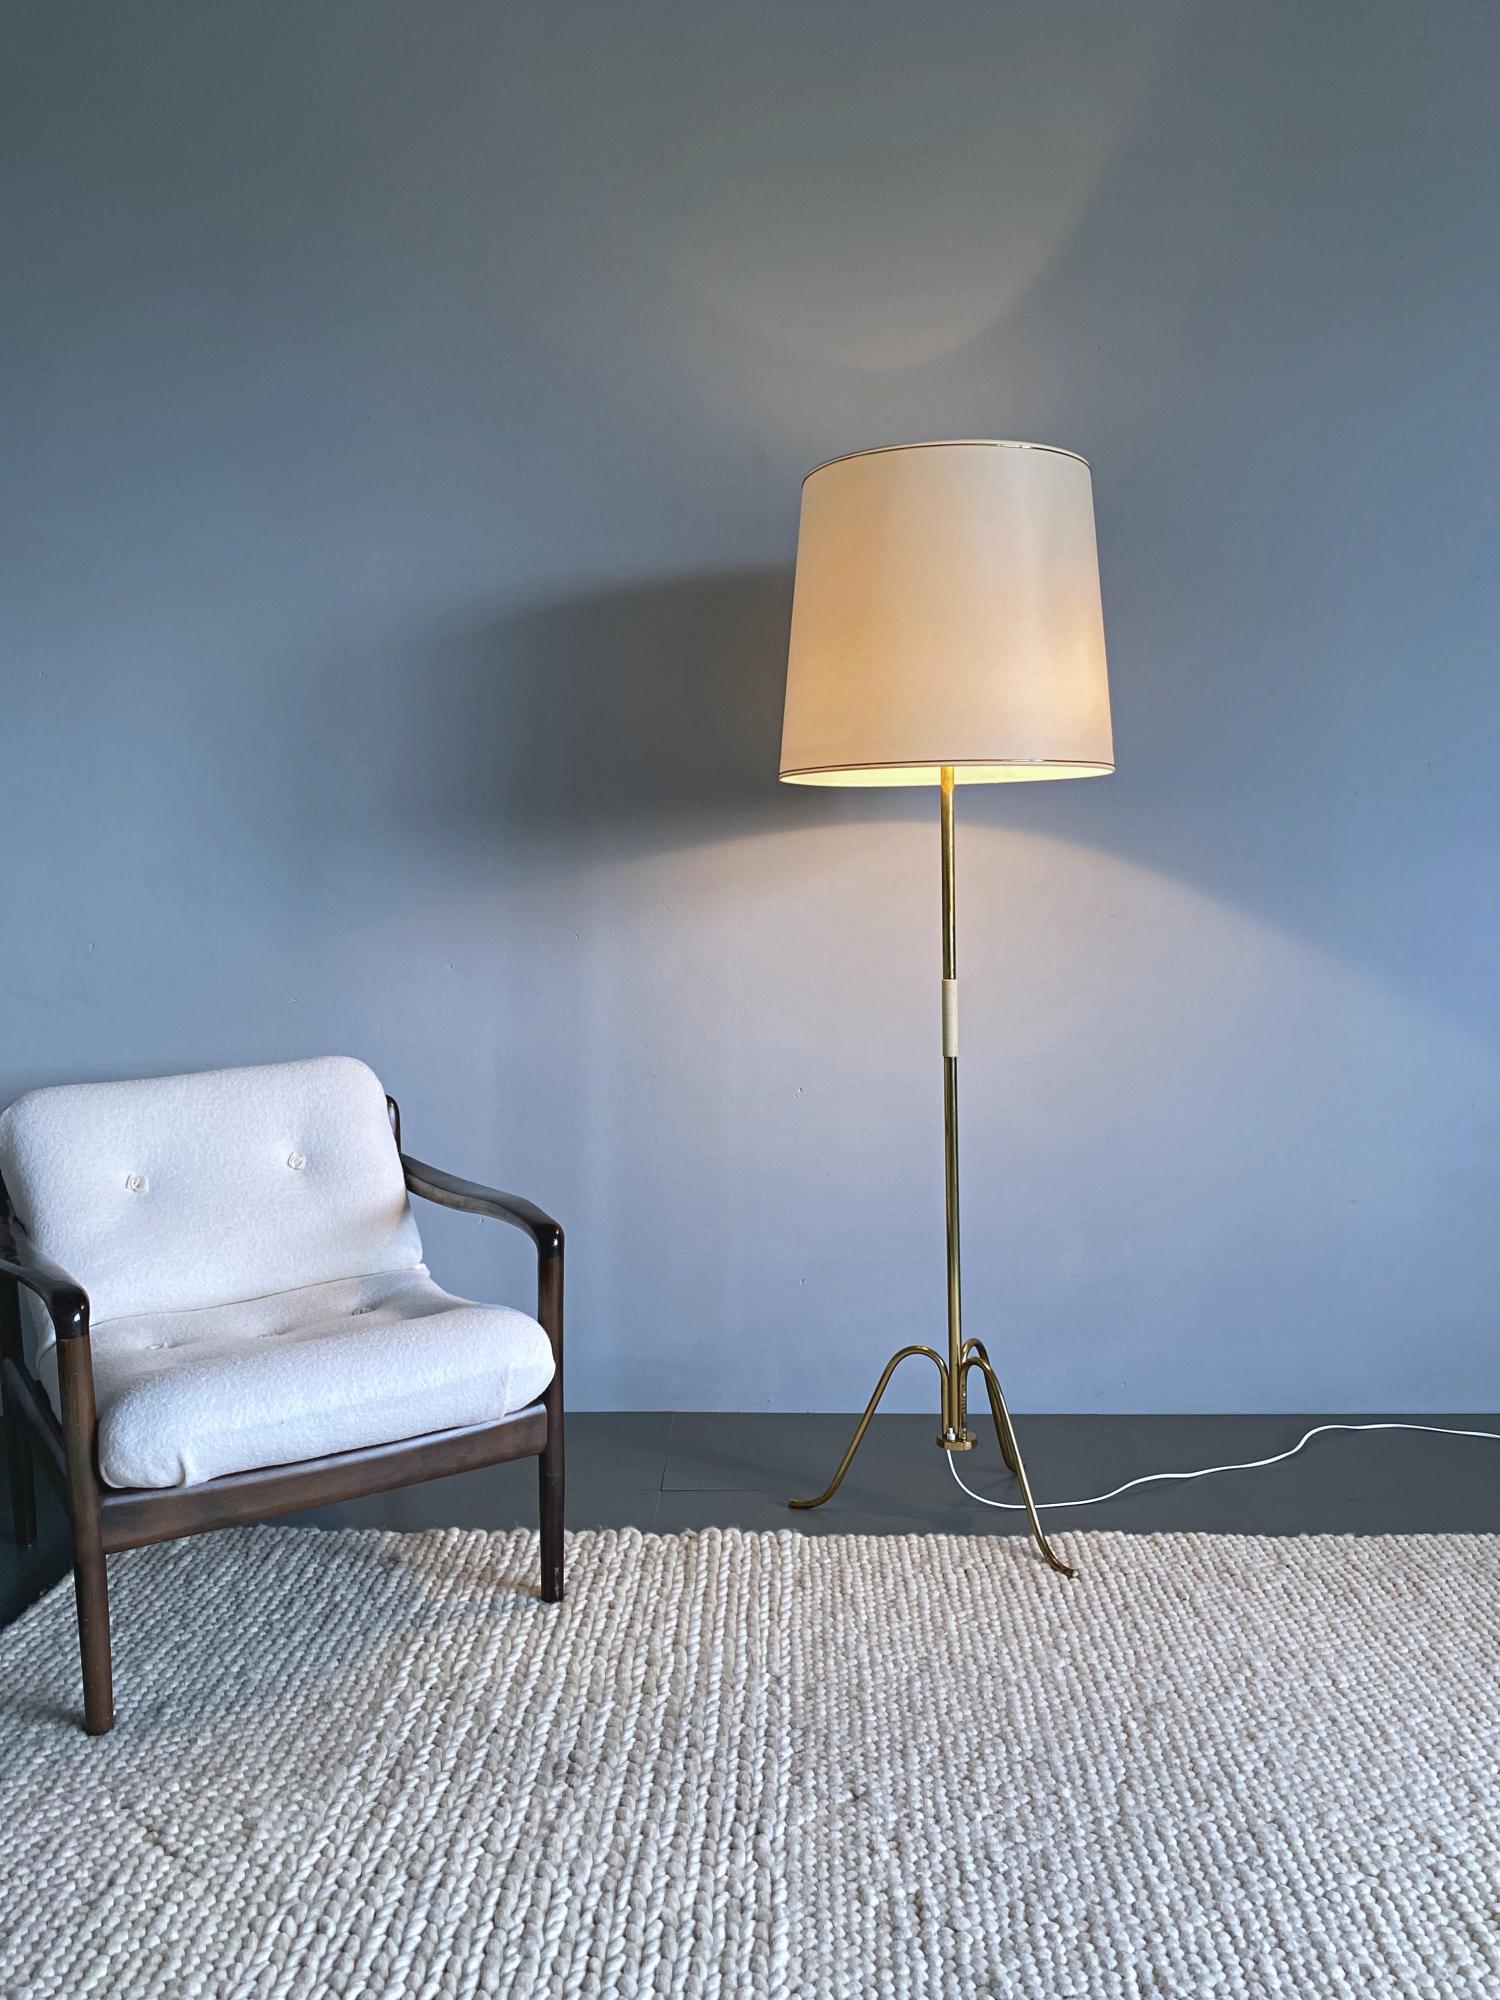 Lampadaire simple et élégant de style midcentury par J.T. Kalmar fabriqué à Vienne dans les années 50. La lampe est composée d'un tube en laiton et d'une base tripode en laiton poli. Le grand abat-jour permet d'obtenir une lumière douce sur une